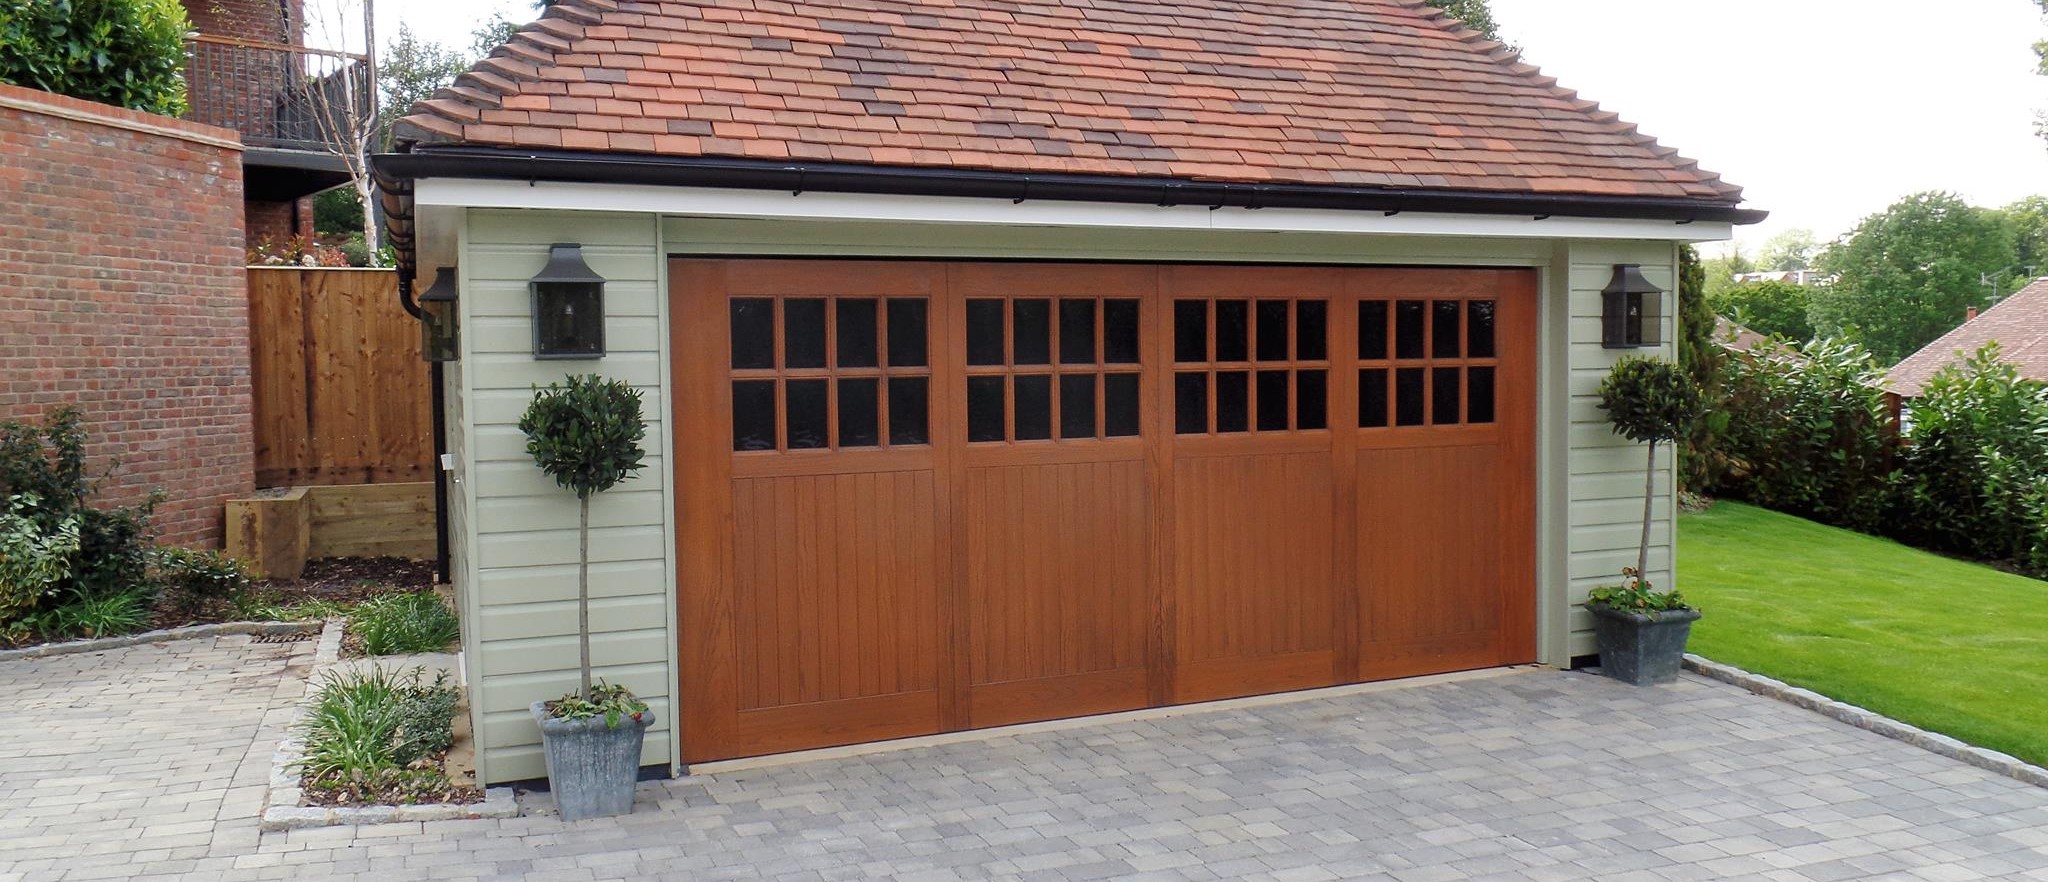 GRP Garage Doors Surrey | Fibreglass Garage Doors | Wessex Garage Doors